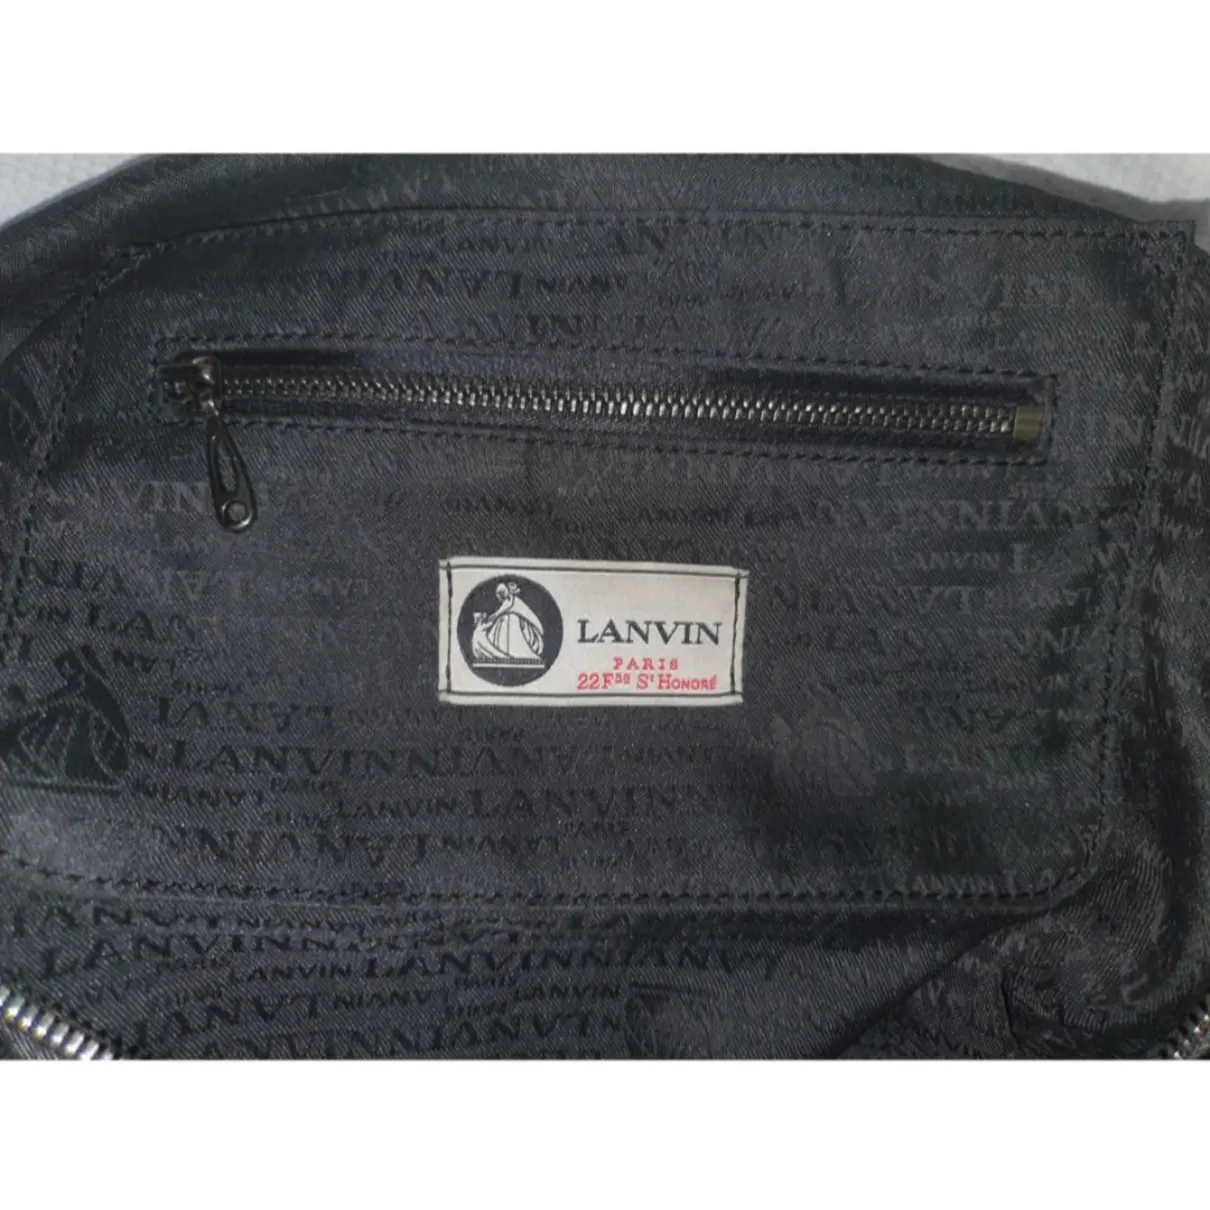 Wool handbag Lanvin